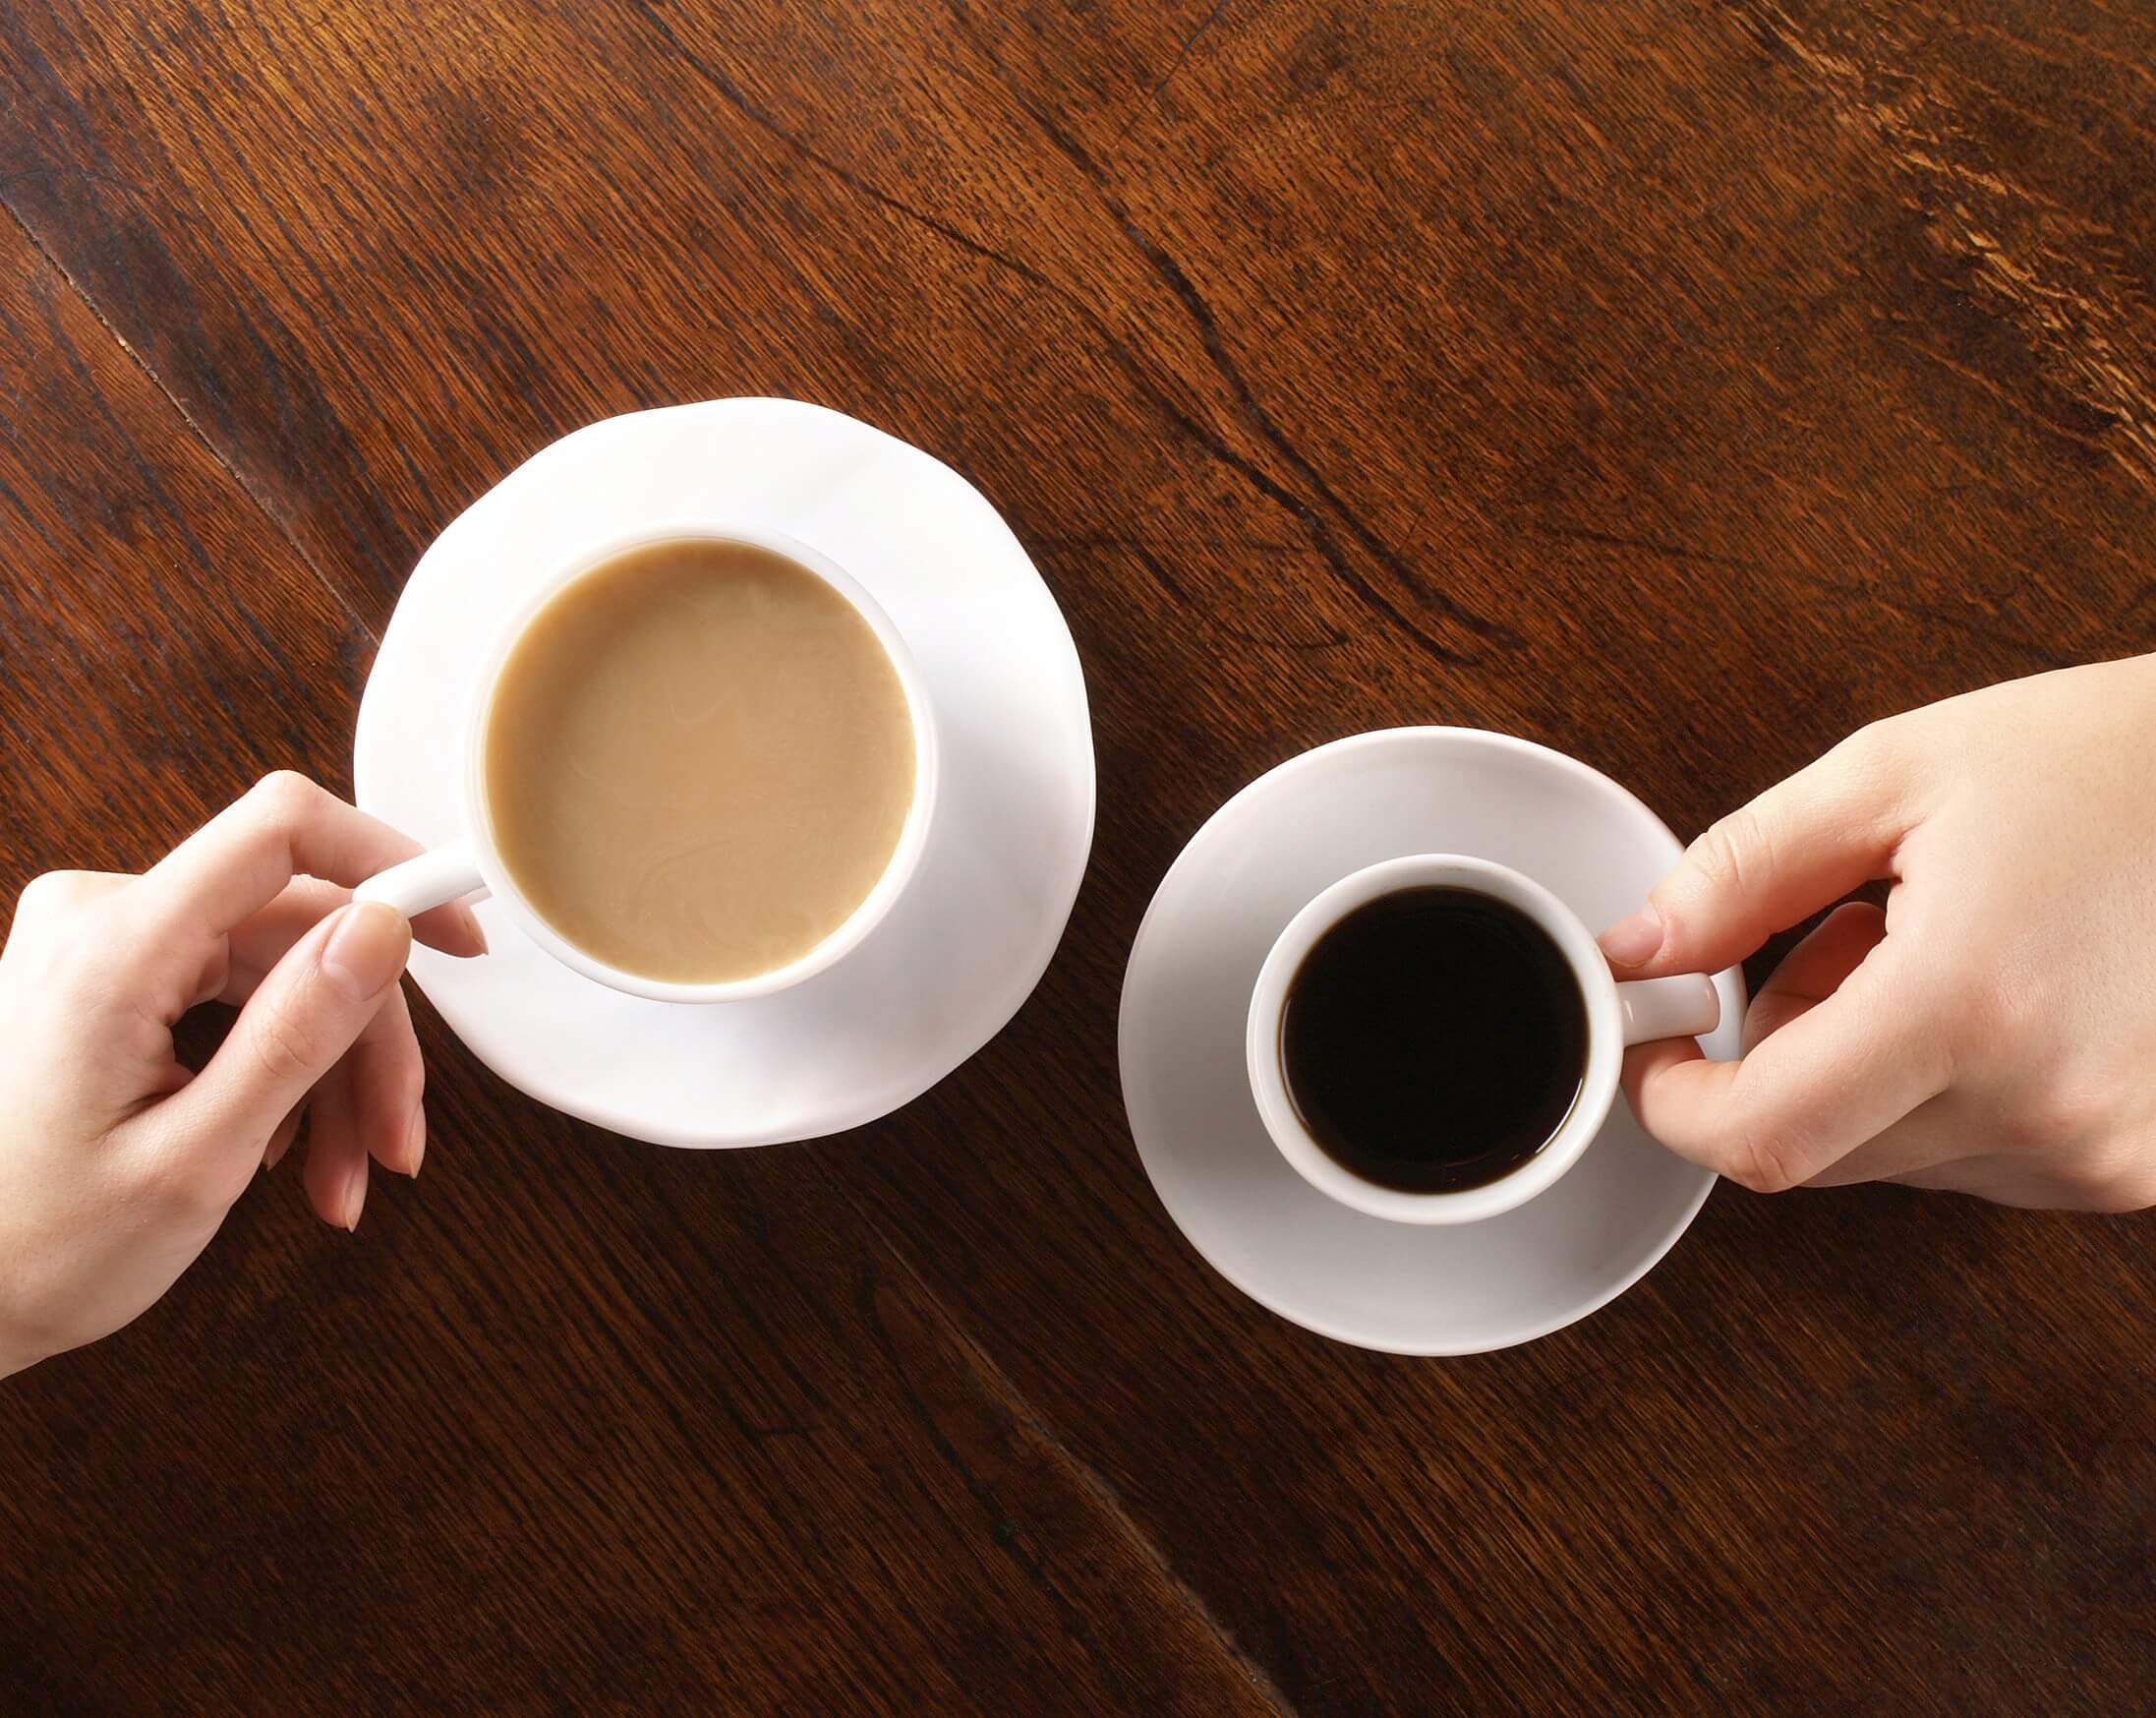 Was ist sinnvoller — Tee oder Kaffee? 6 Fakten über Tee, von denen Sie nicht wussten